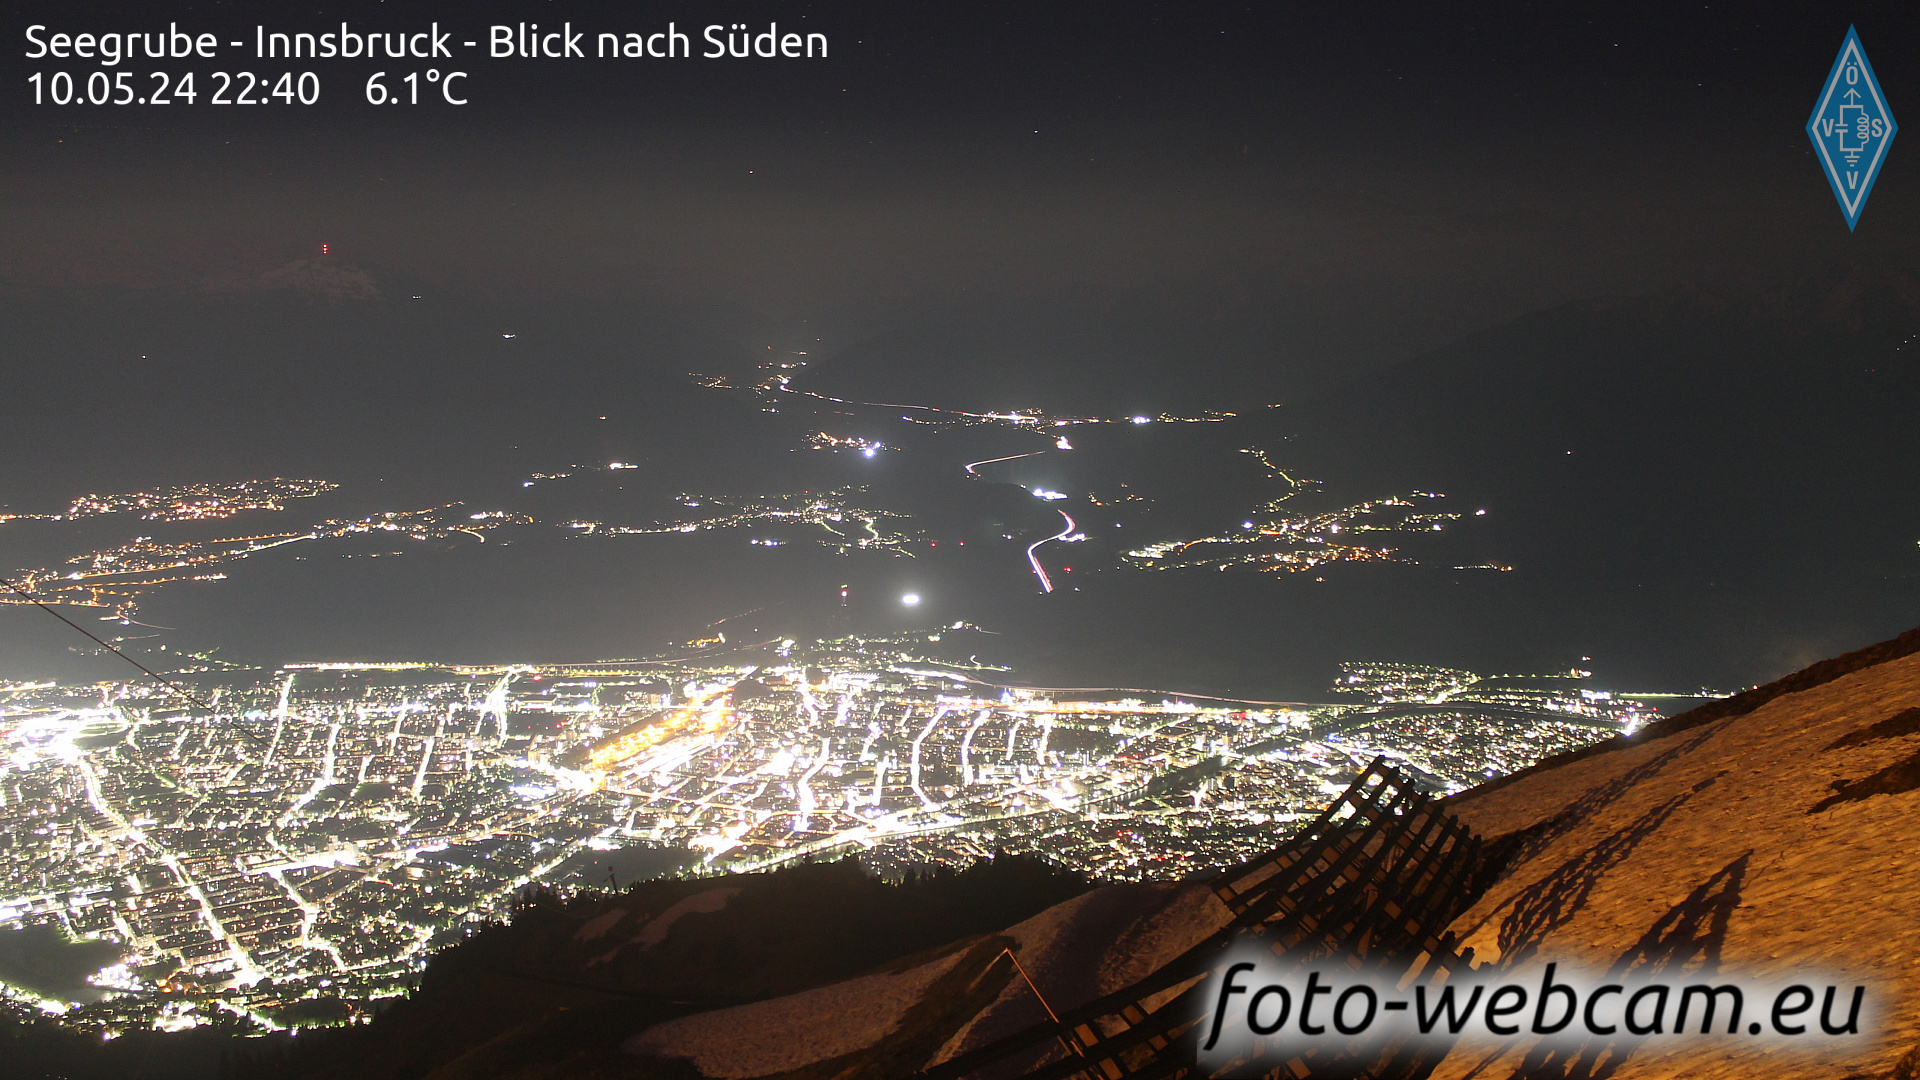 Innsbruck Di. 22:48